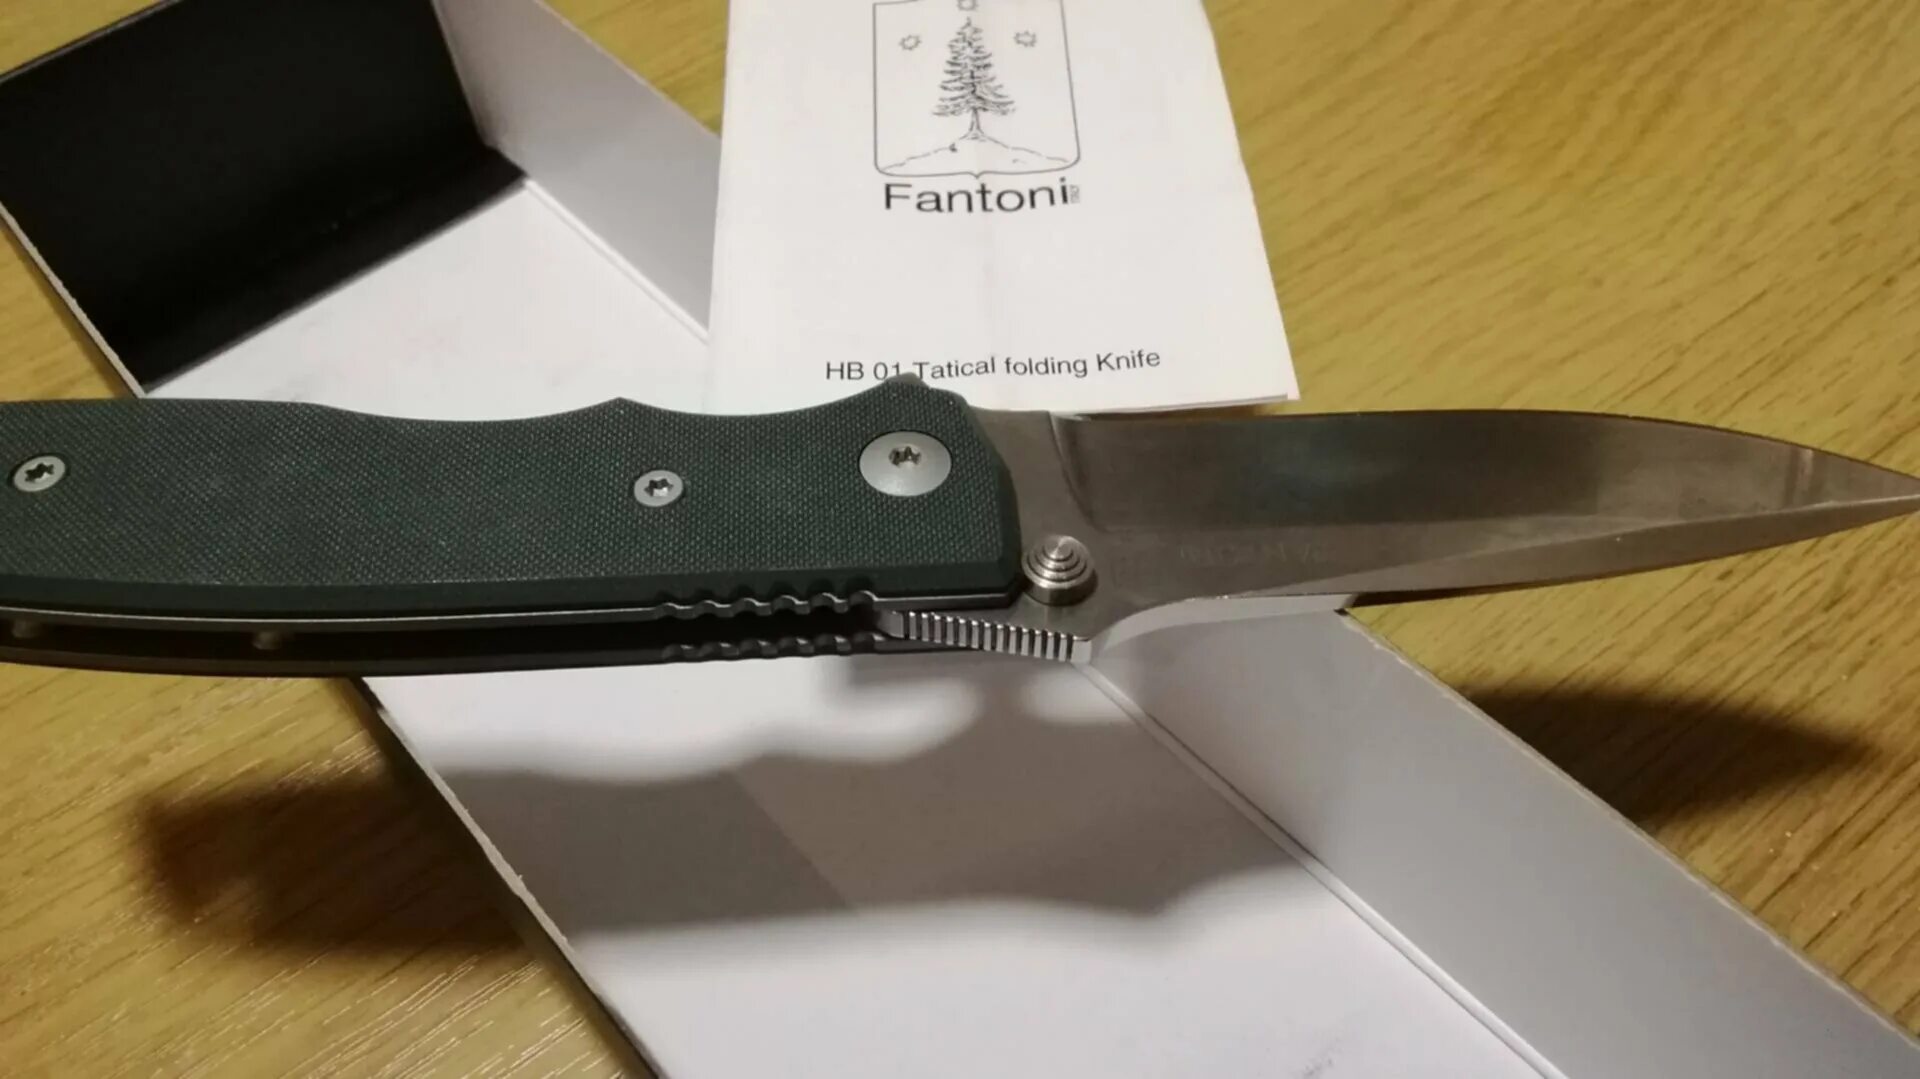 15 ножевых 1. Фантони HB-01. Нож Fantoni HB fixed. Нож складной Fantoni hb01 мнение. Fantoni HB-01 накладки.